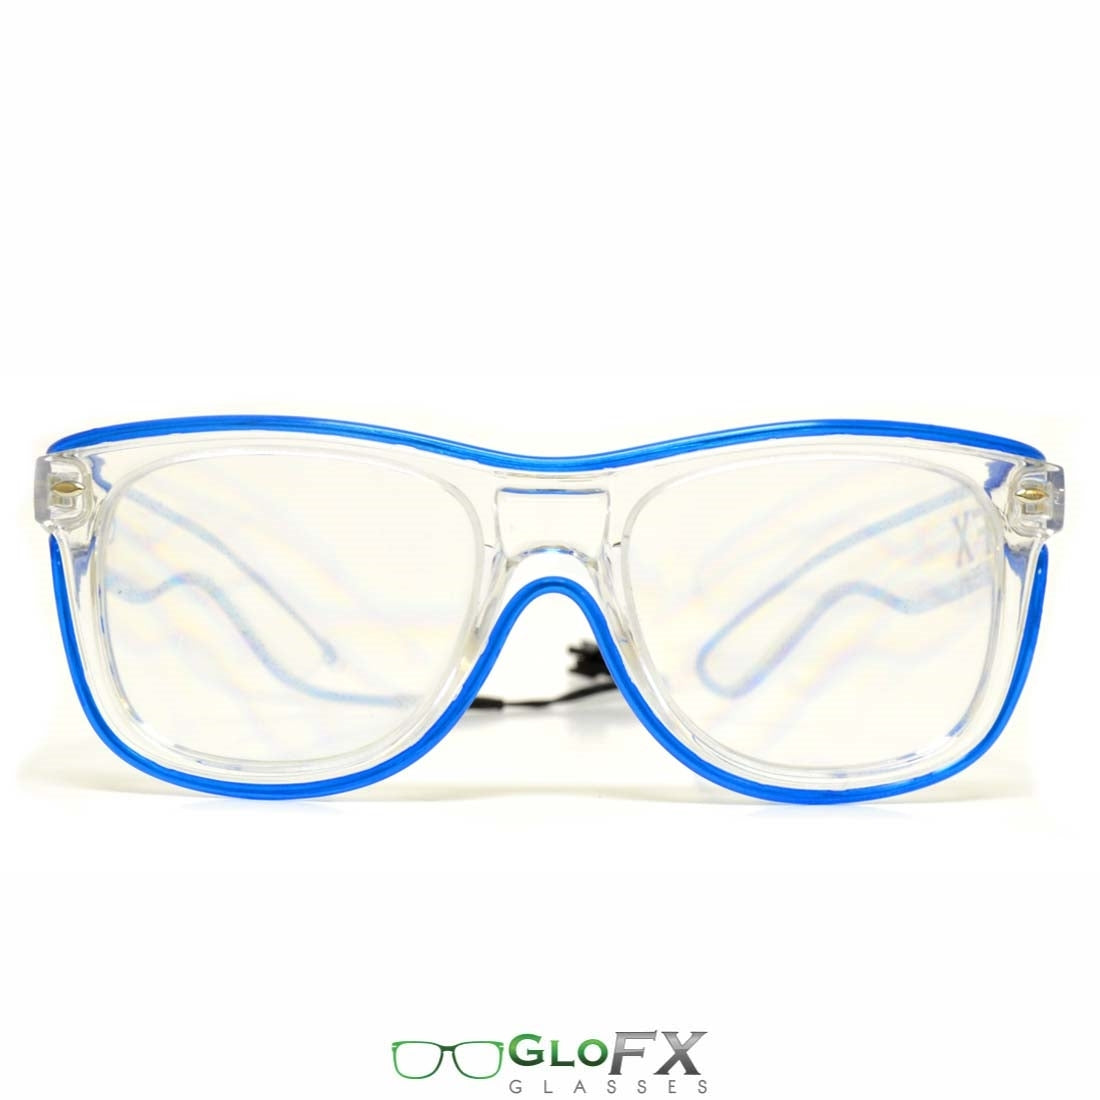 plastic light diffraction glasses